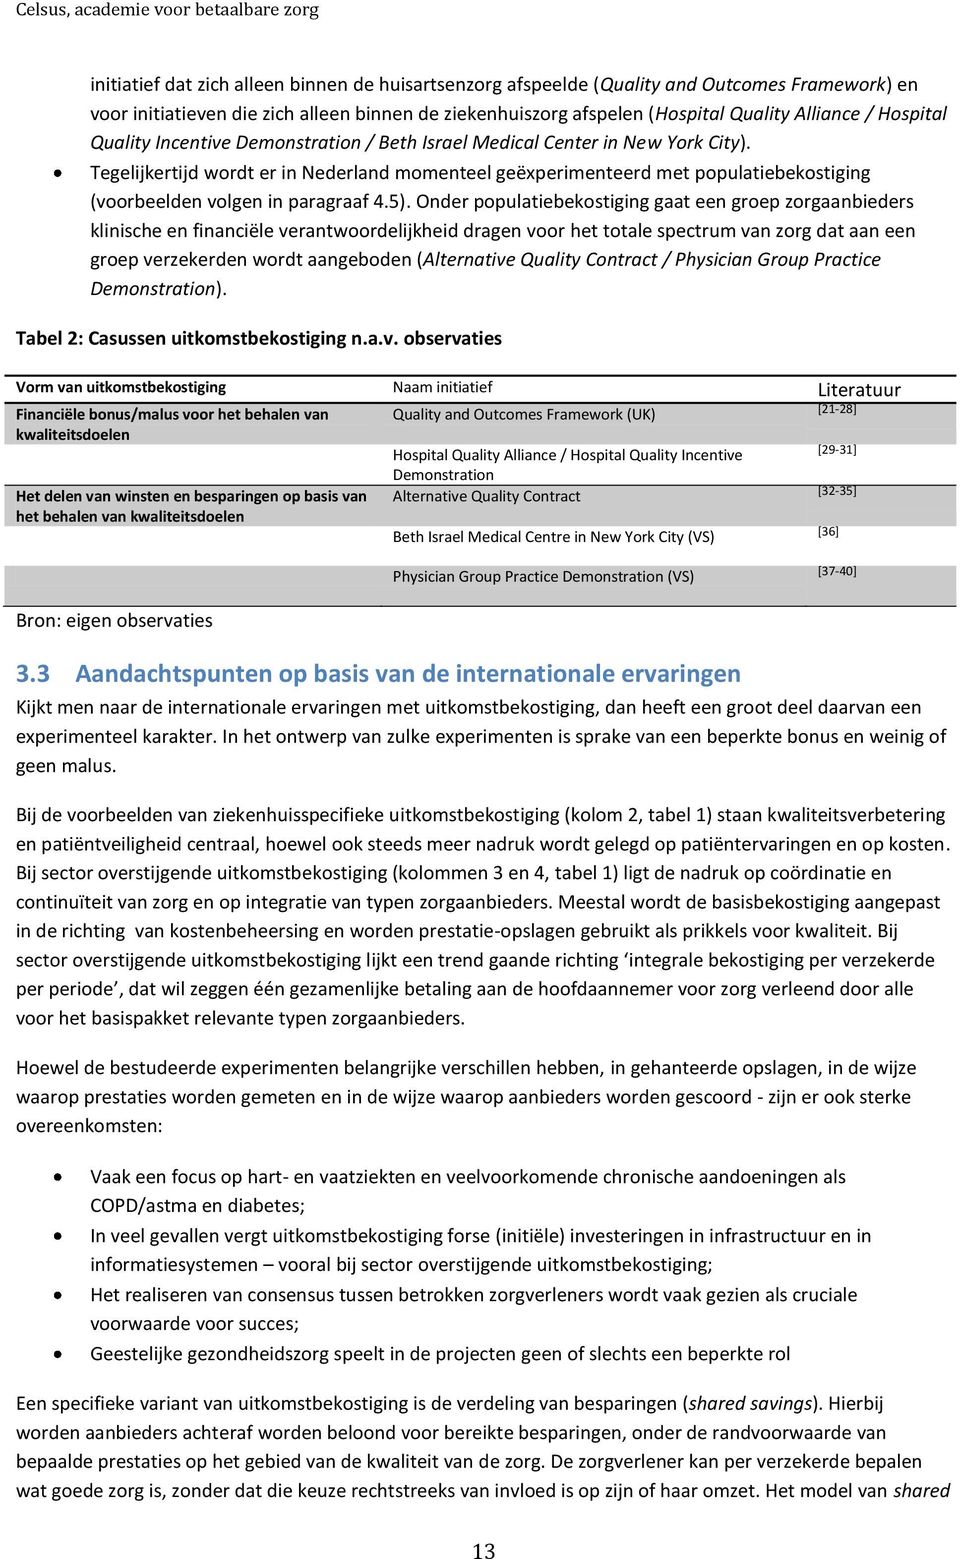 Tegelijkertijd wordt er in Nederland momenteel geëxperimenteerd met populatiebekostiging (voorbeelden volgen in paragraaf 4.5).